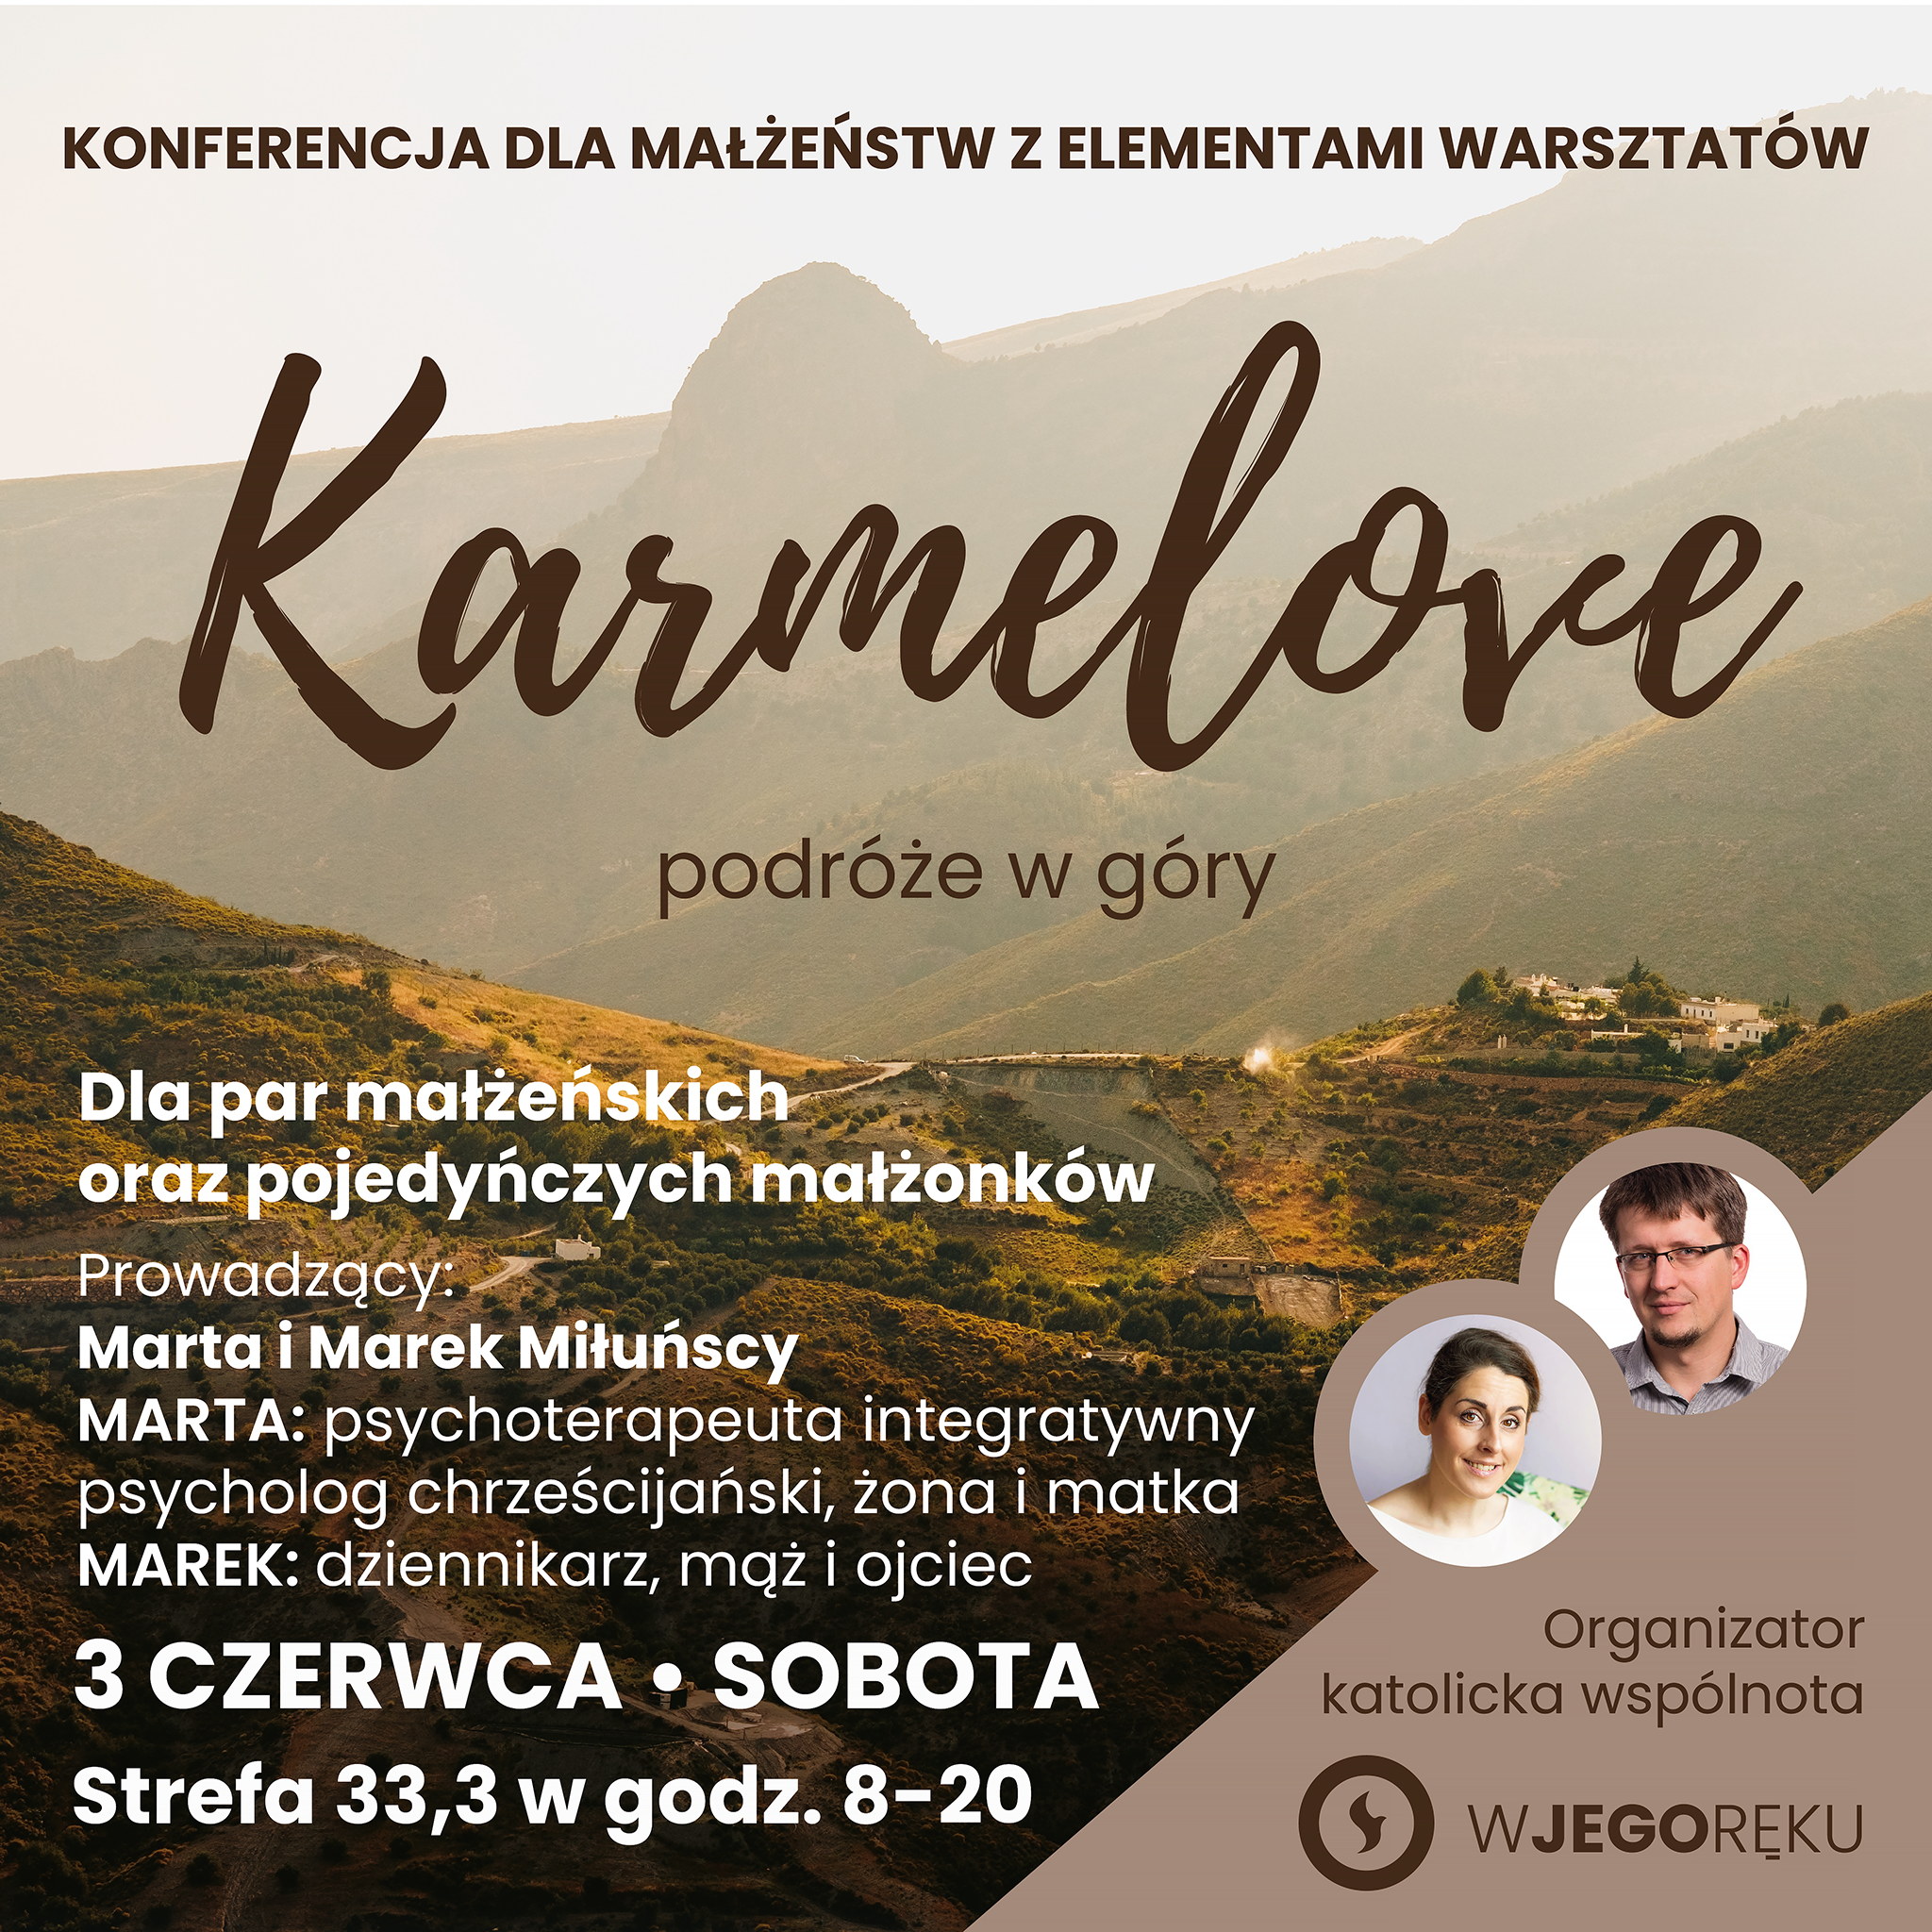 Konferencja dla małżeństw, warsztaty małżeńskie, Marta Miłuńska, Marek Miłuński, góra Karmel